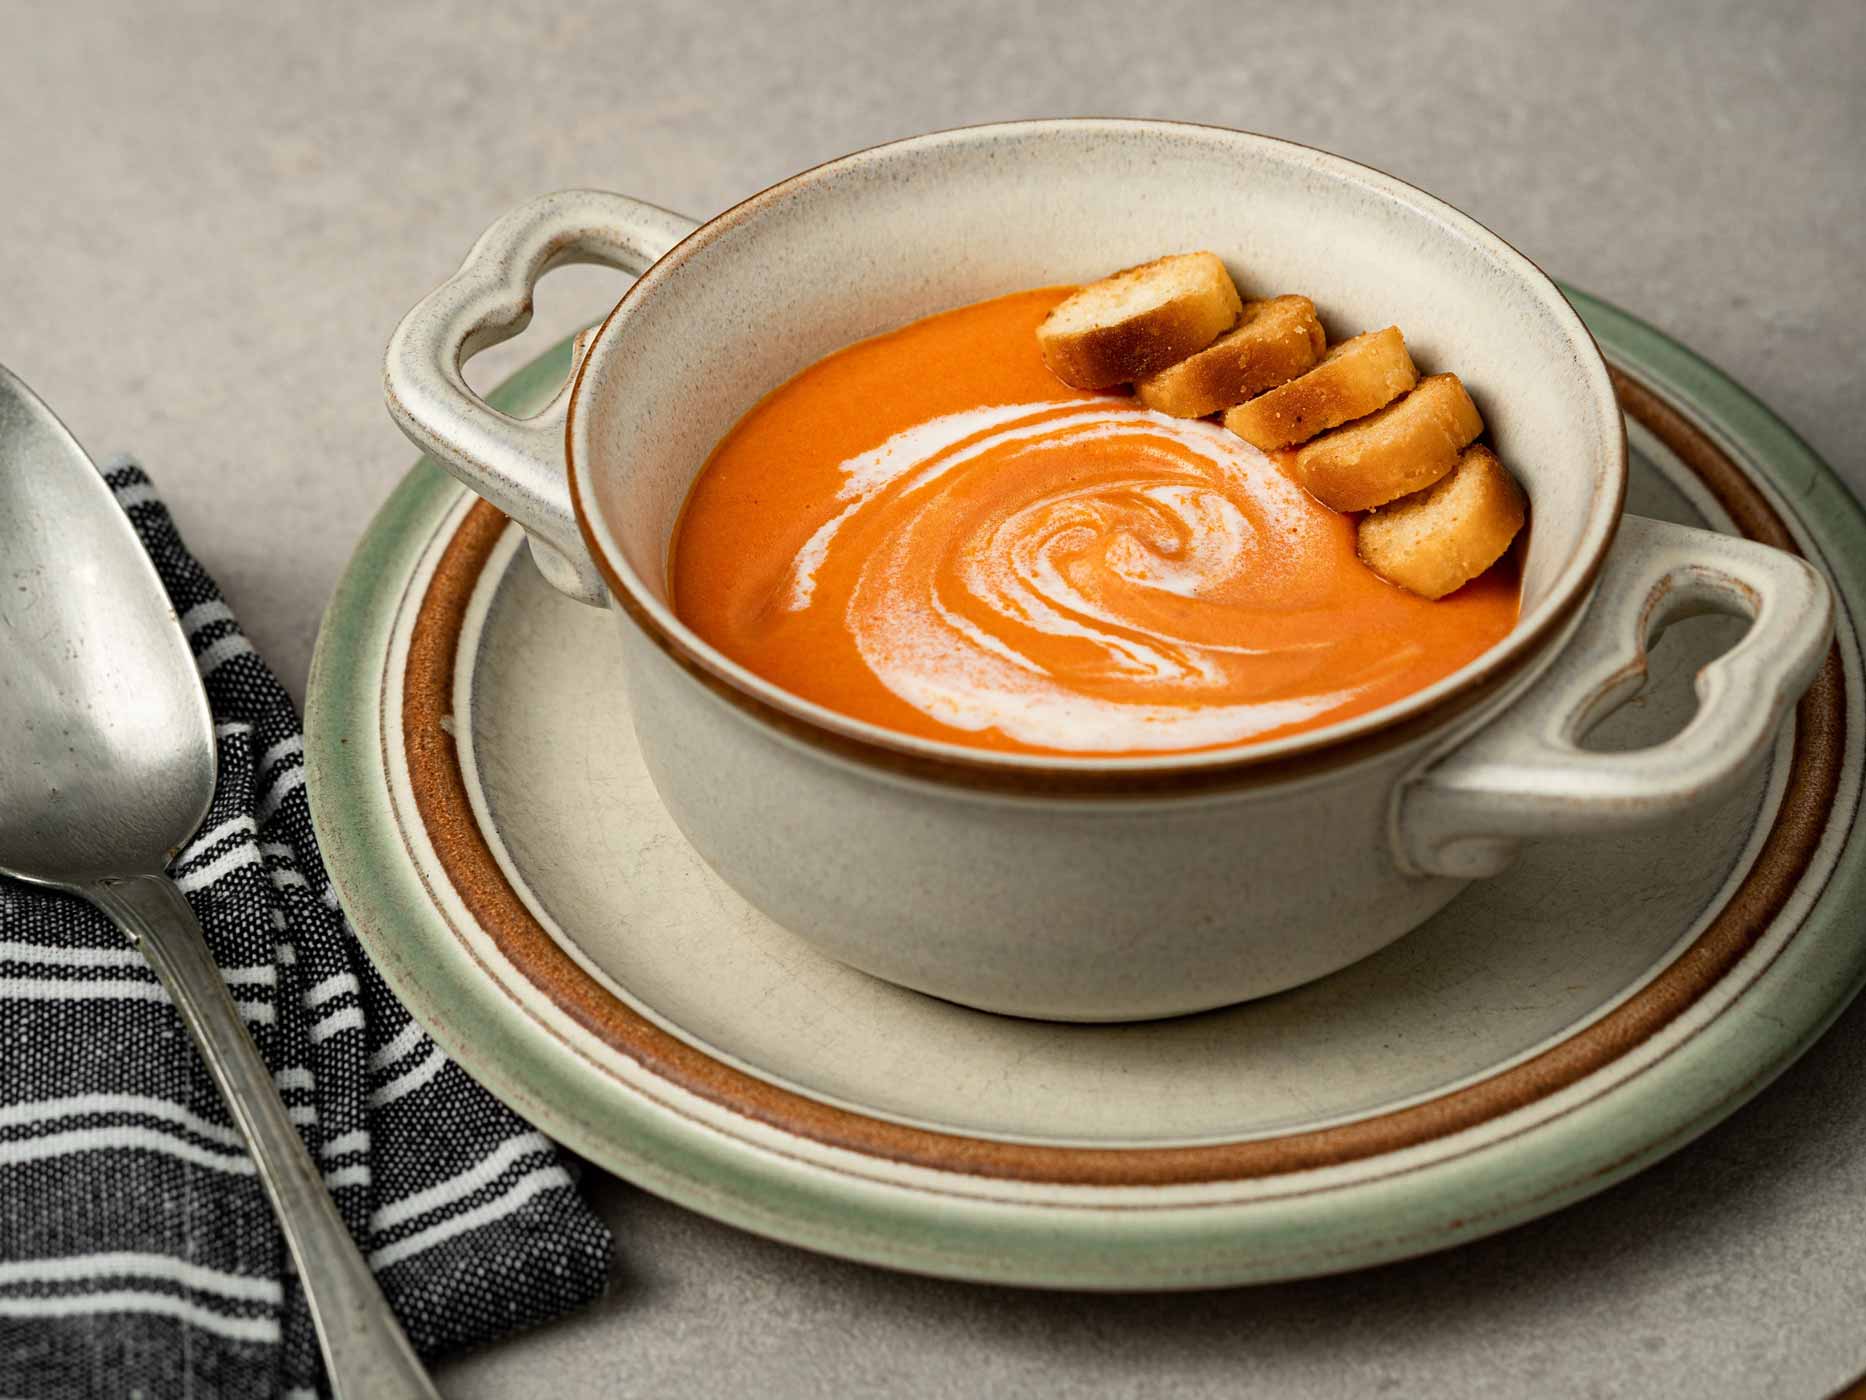 Cremige Kürbissuppe mit Croutons und Sahne verfeinert in einer Suppentasse.